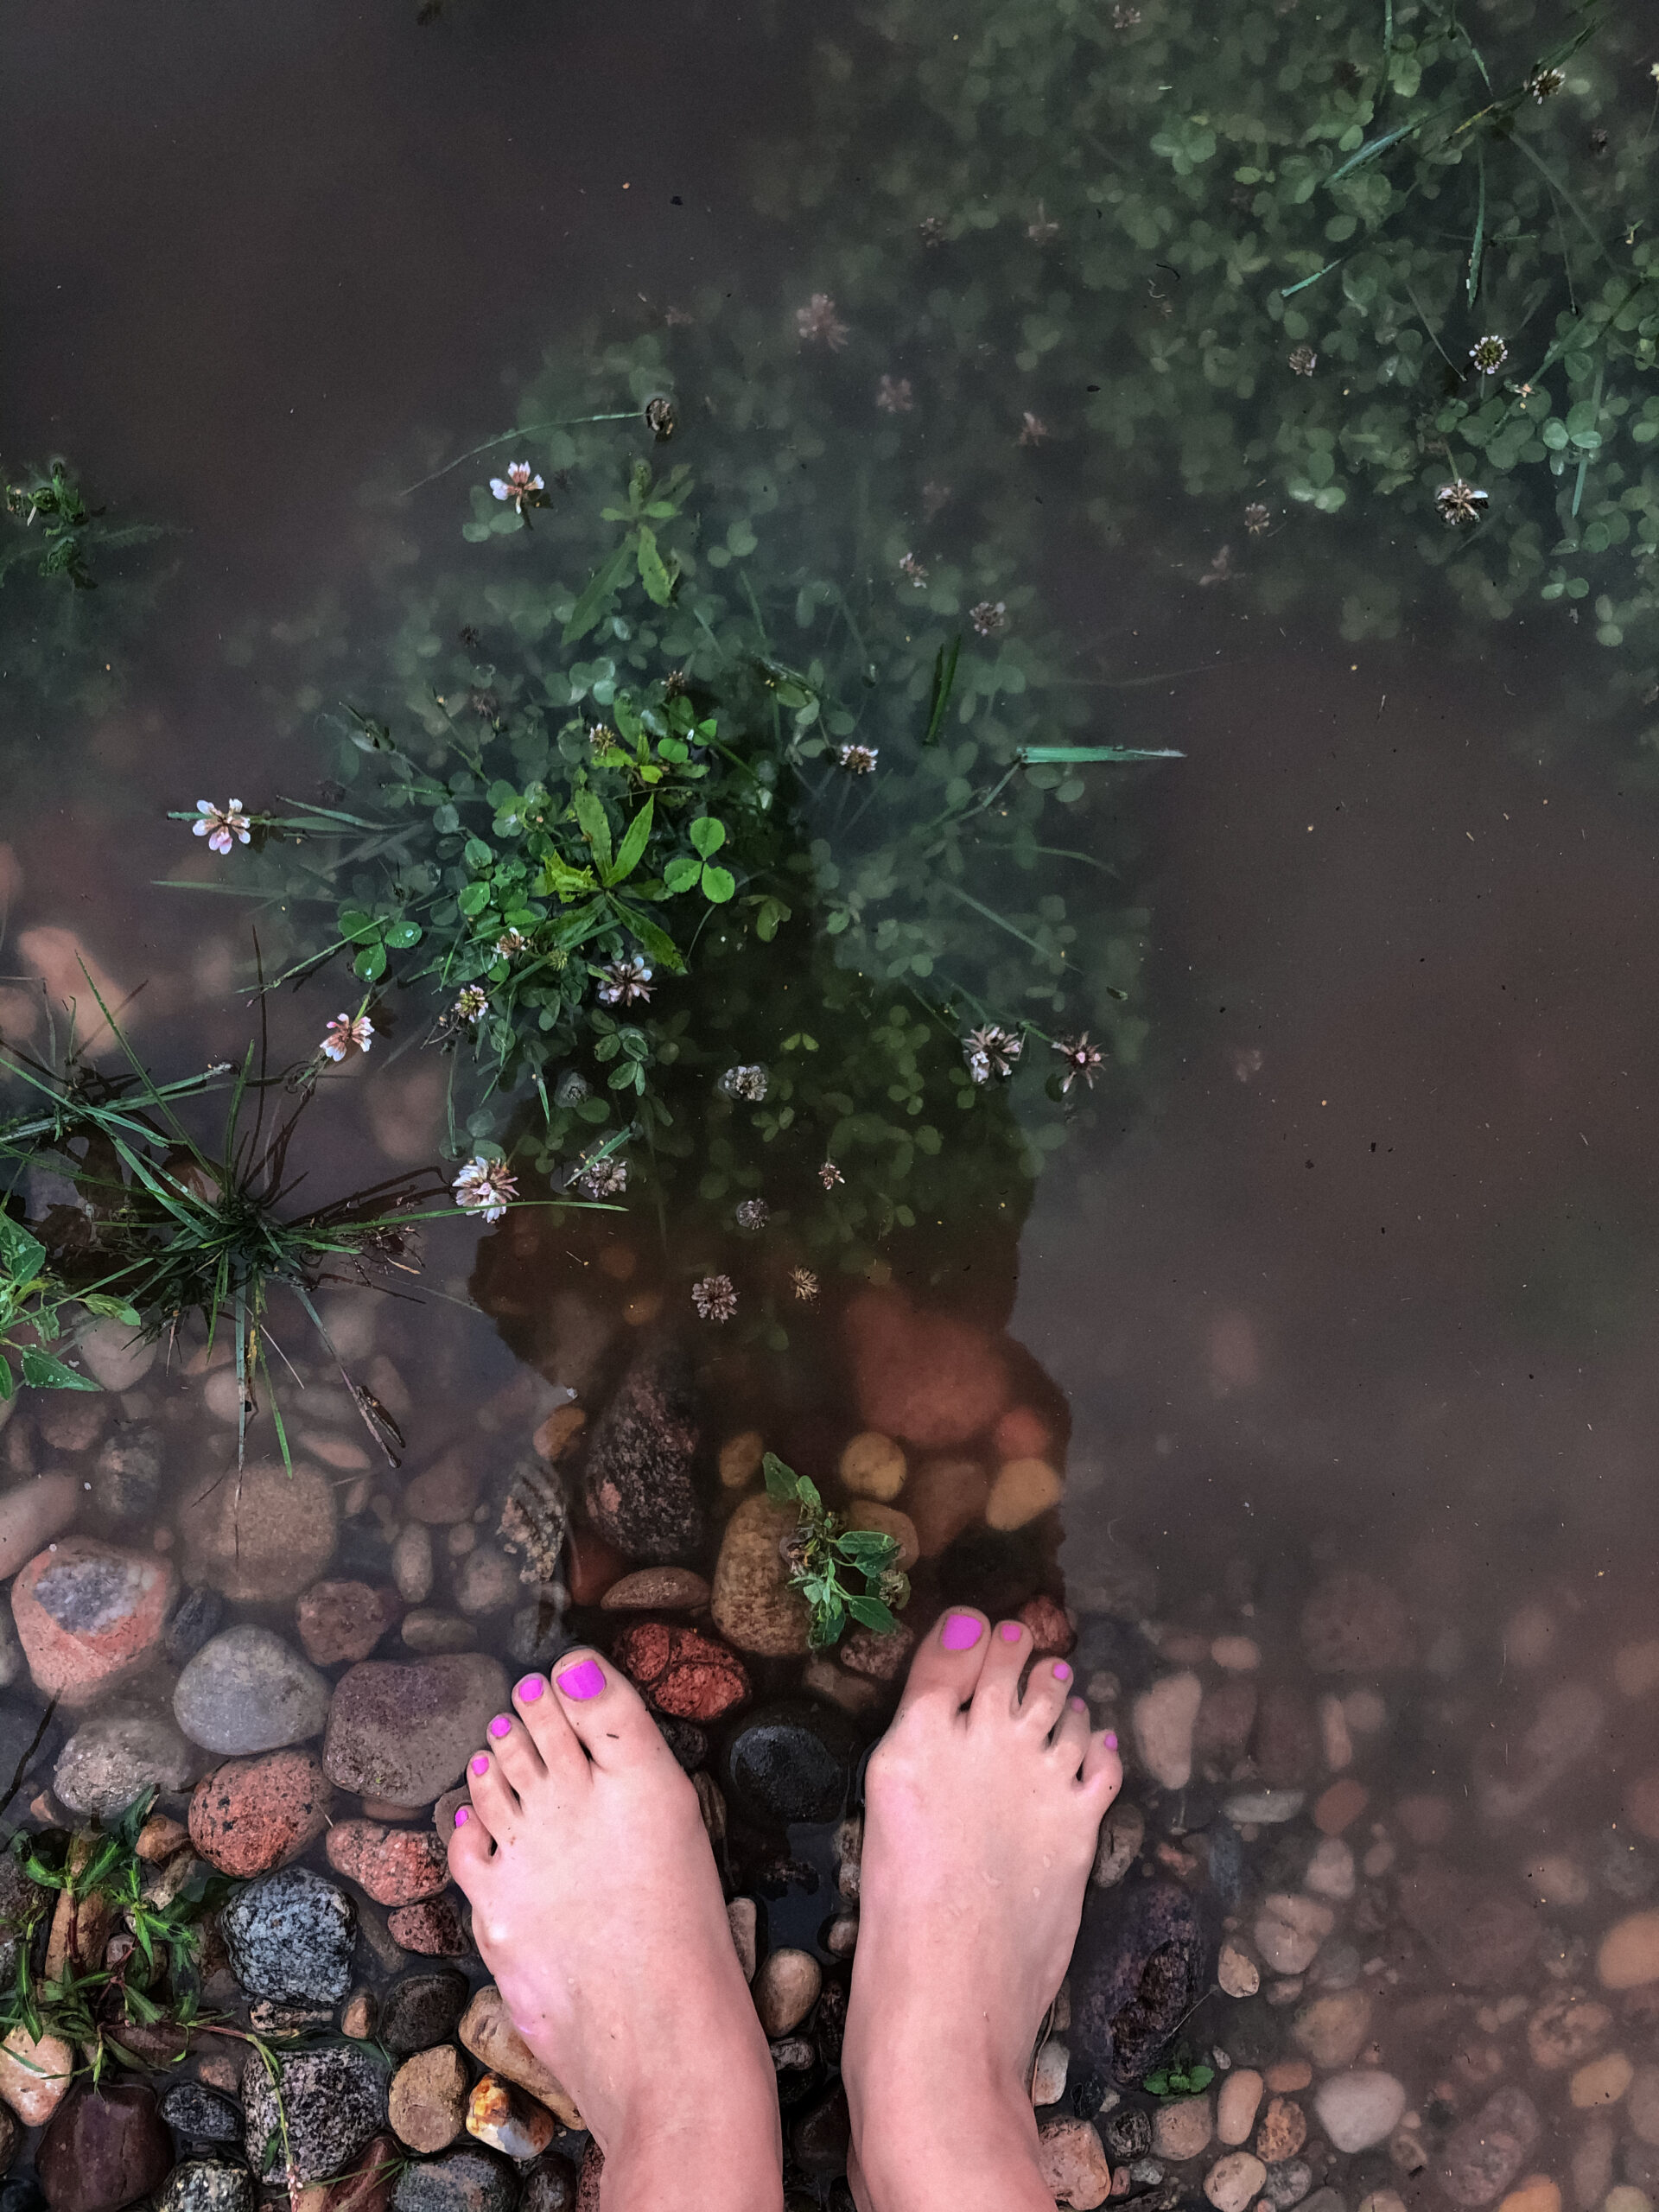 Die Füße einer Frau in einem kleinen Teich.